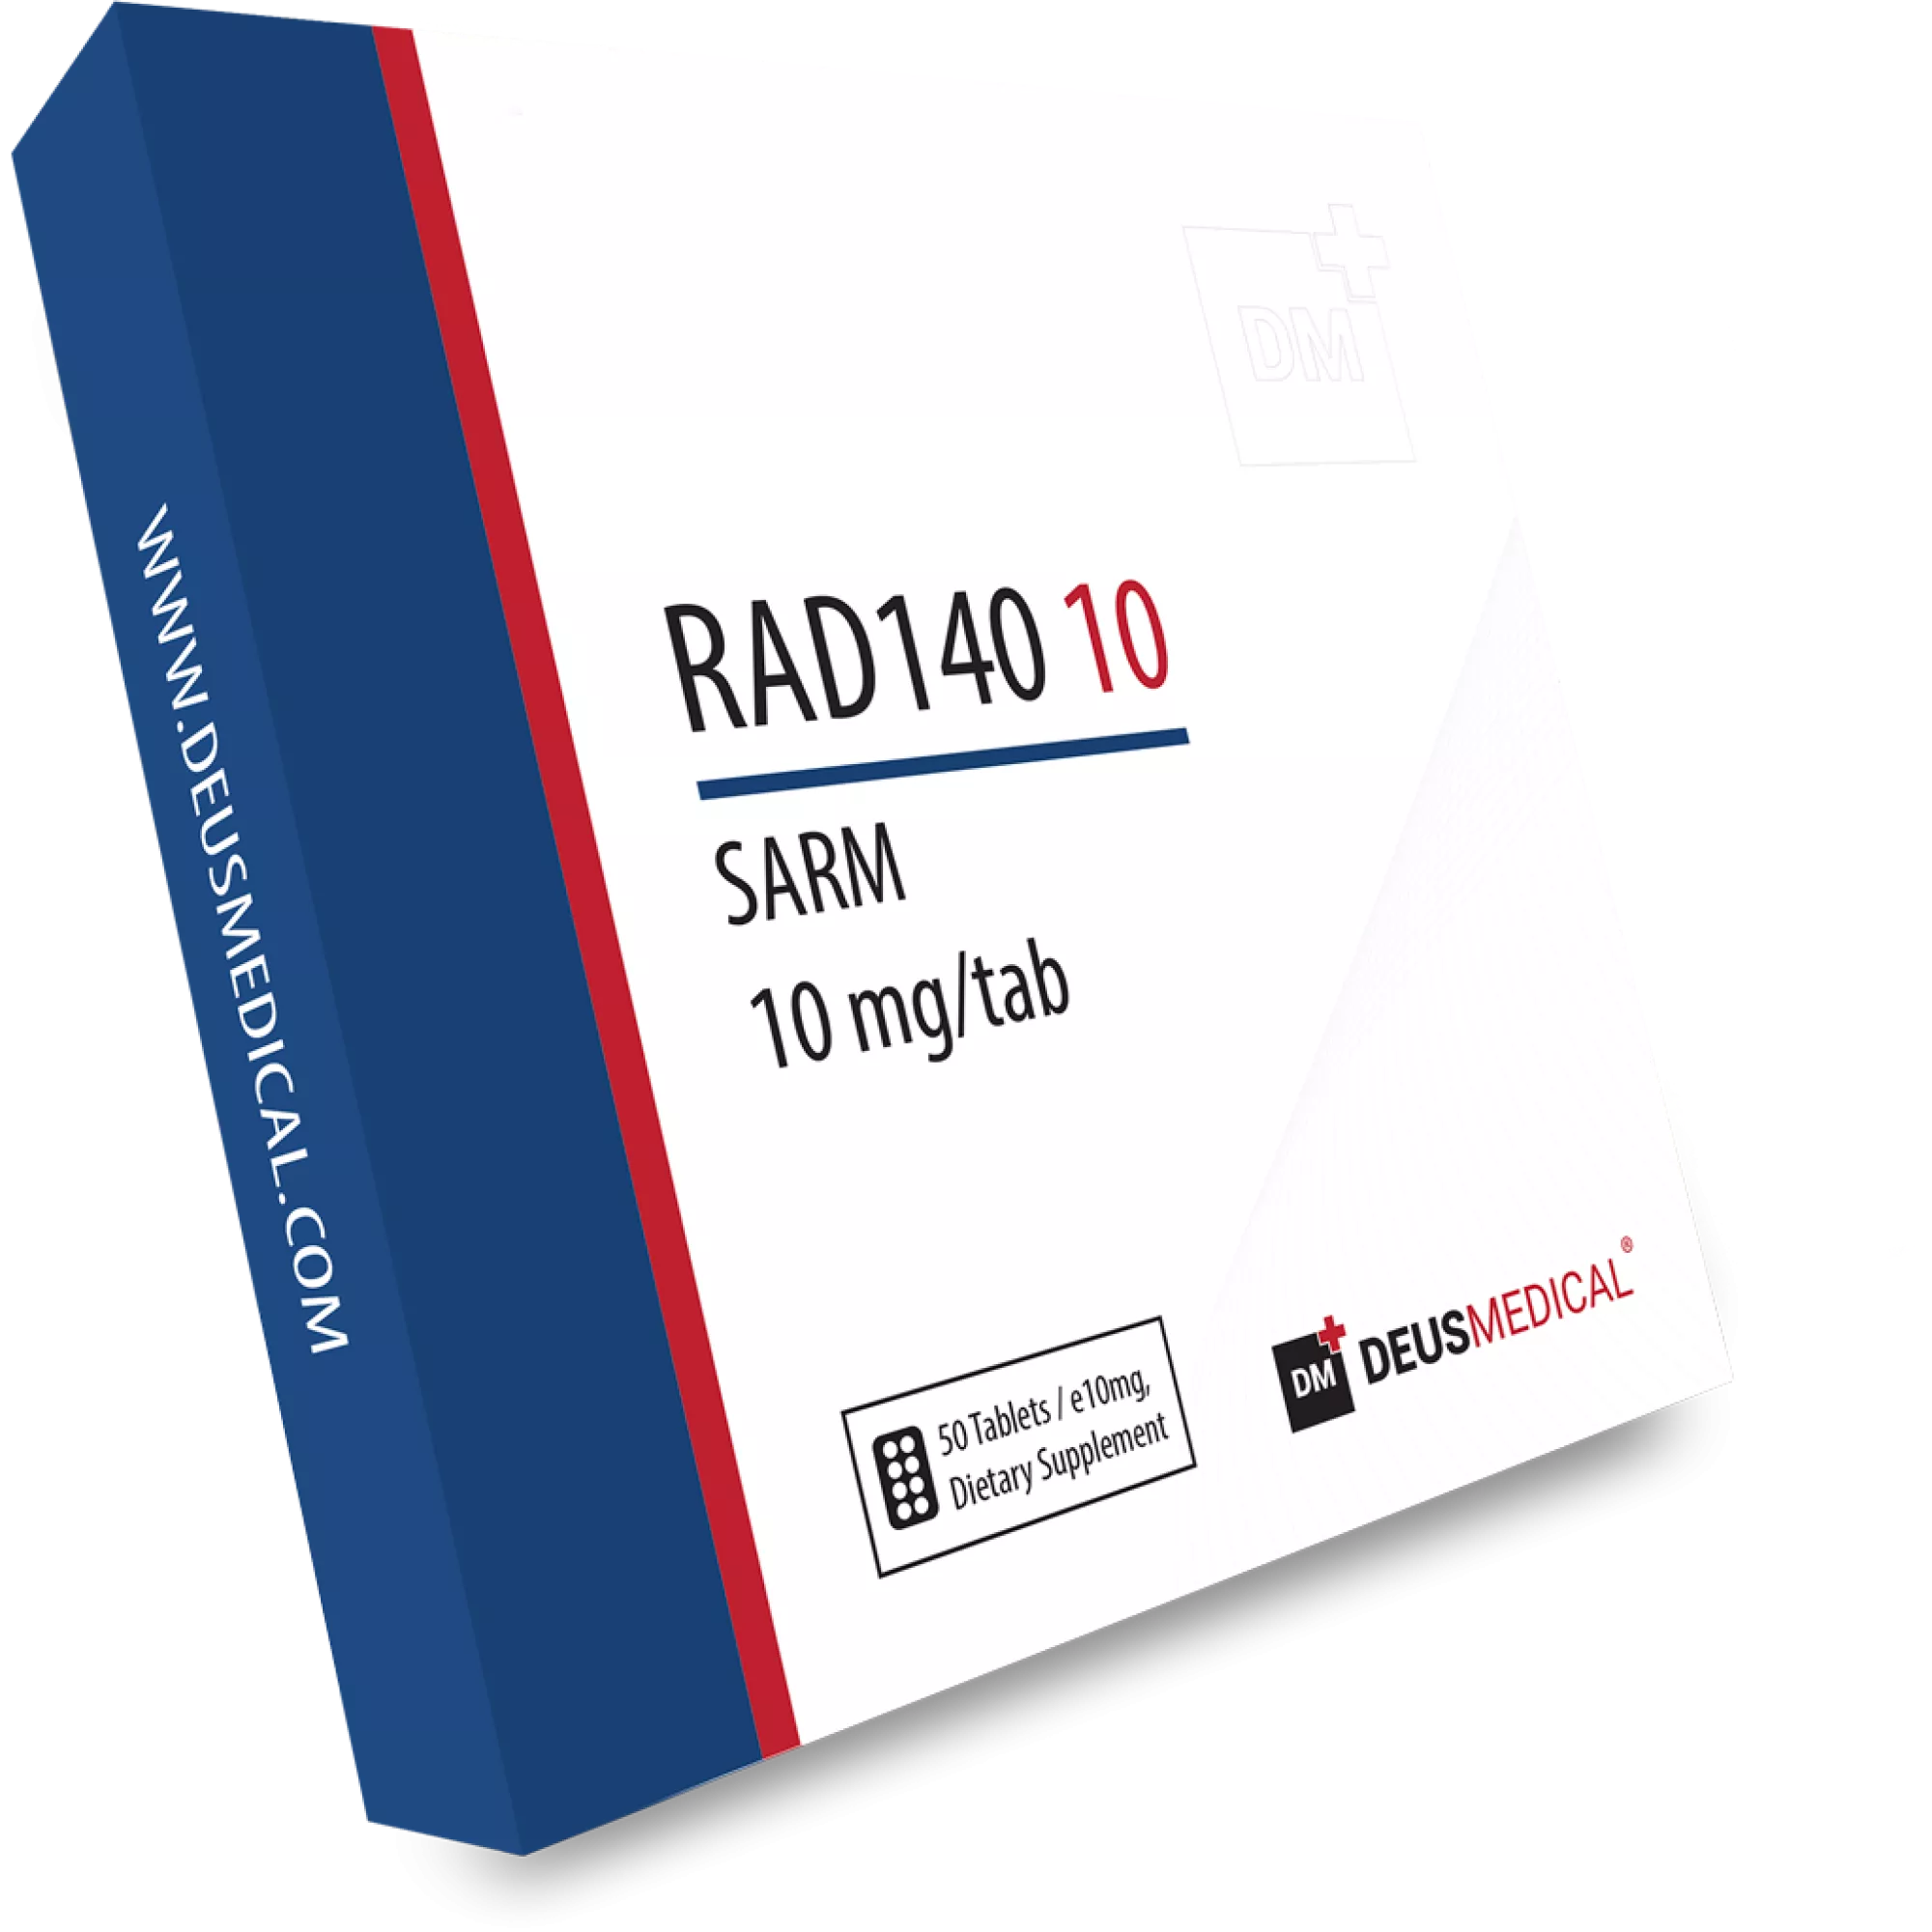 RAD140 10 (Testolone), Deus Medical, Compre esteroides en línea - www.deuspower.shop